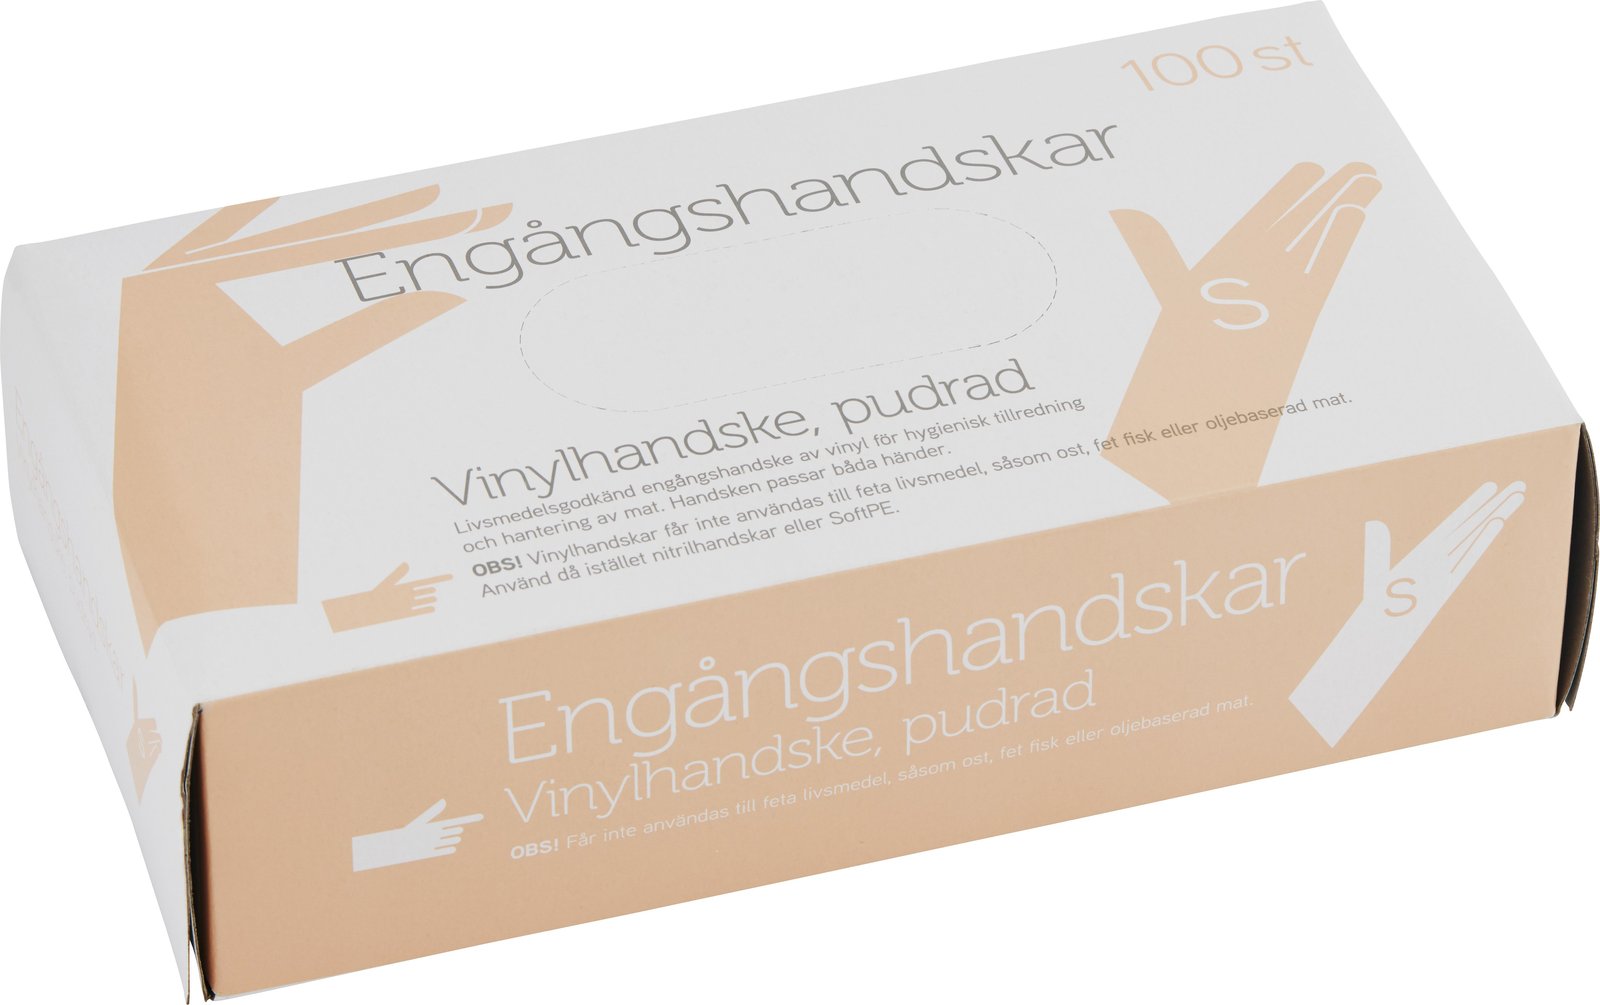 Fixa Engångshandskar Vinyl Pudrad Small 100 st